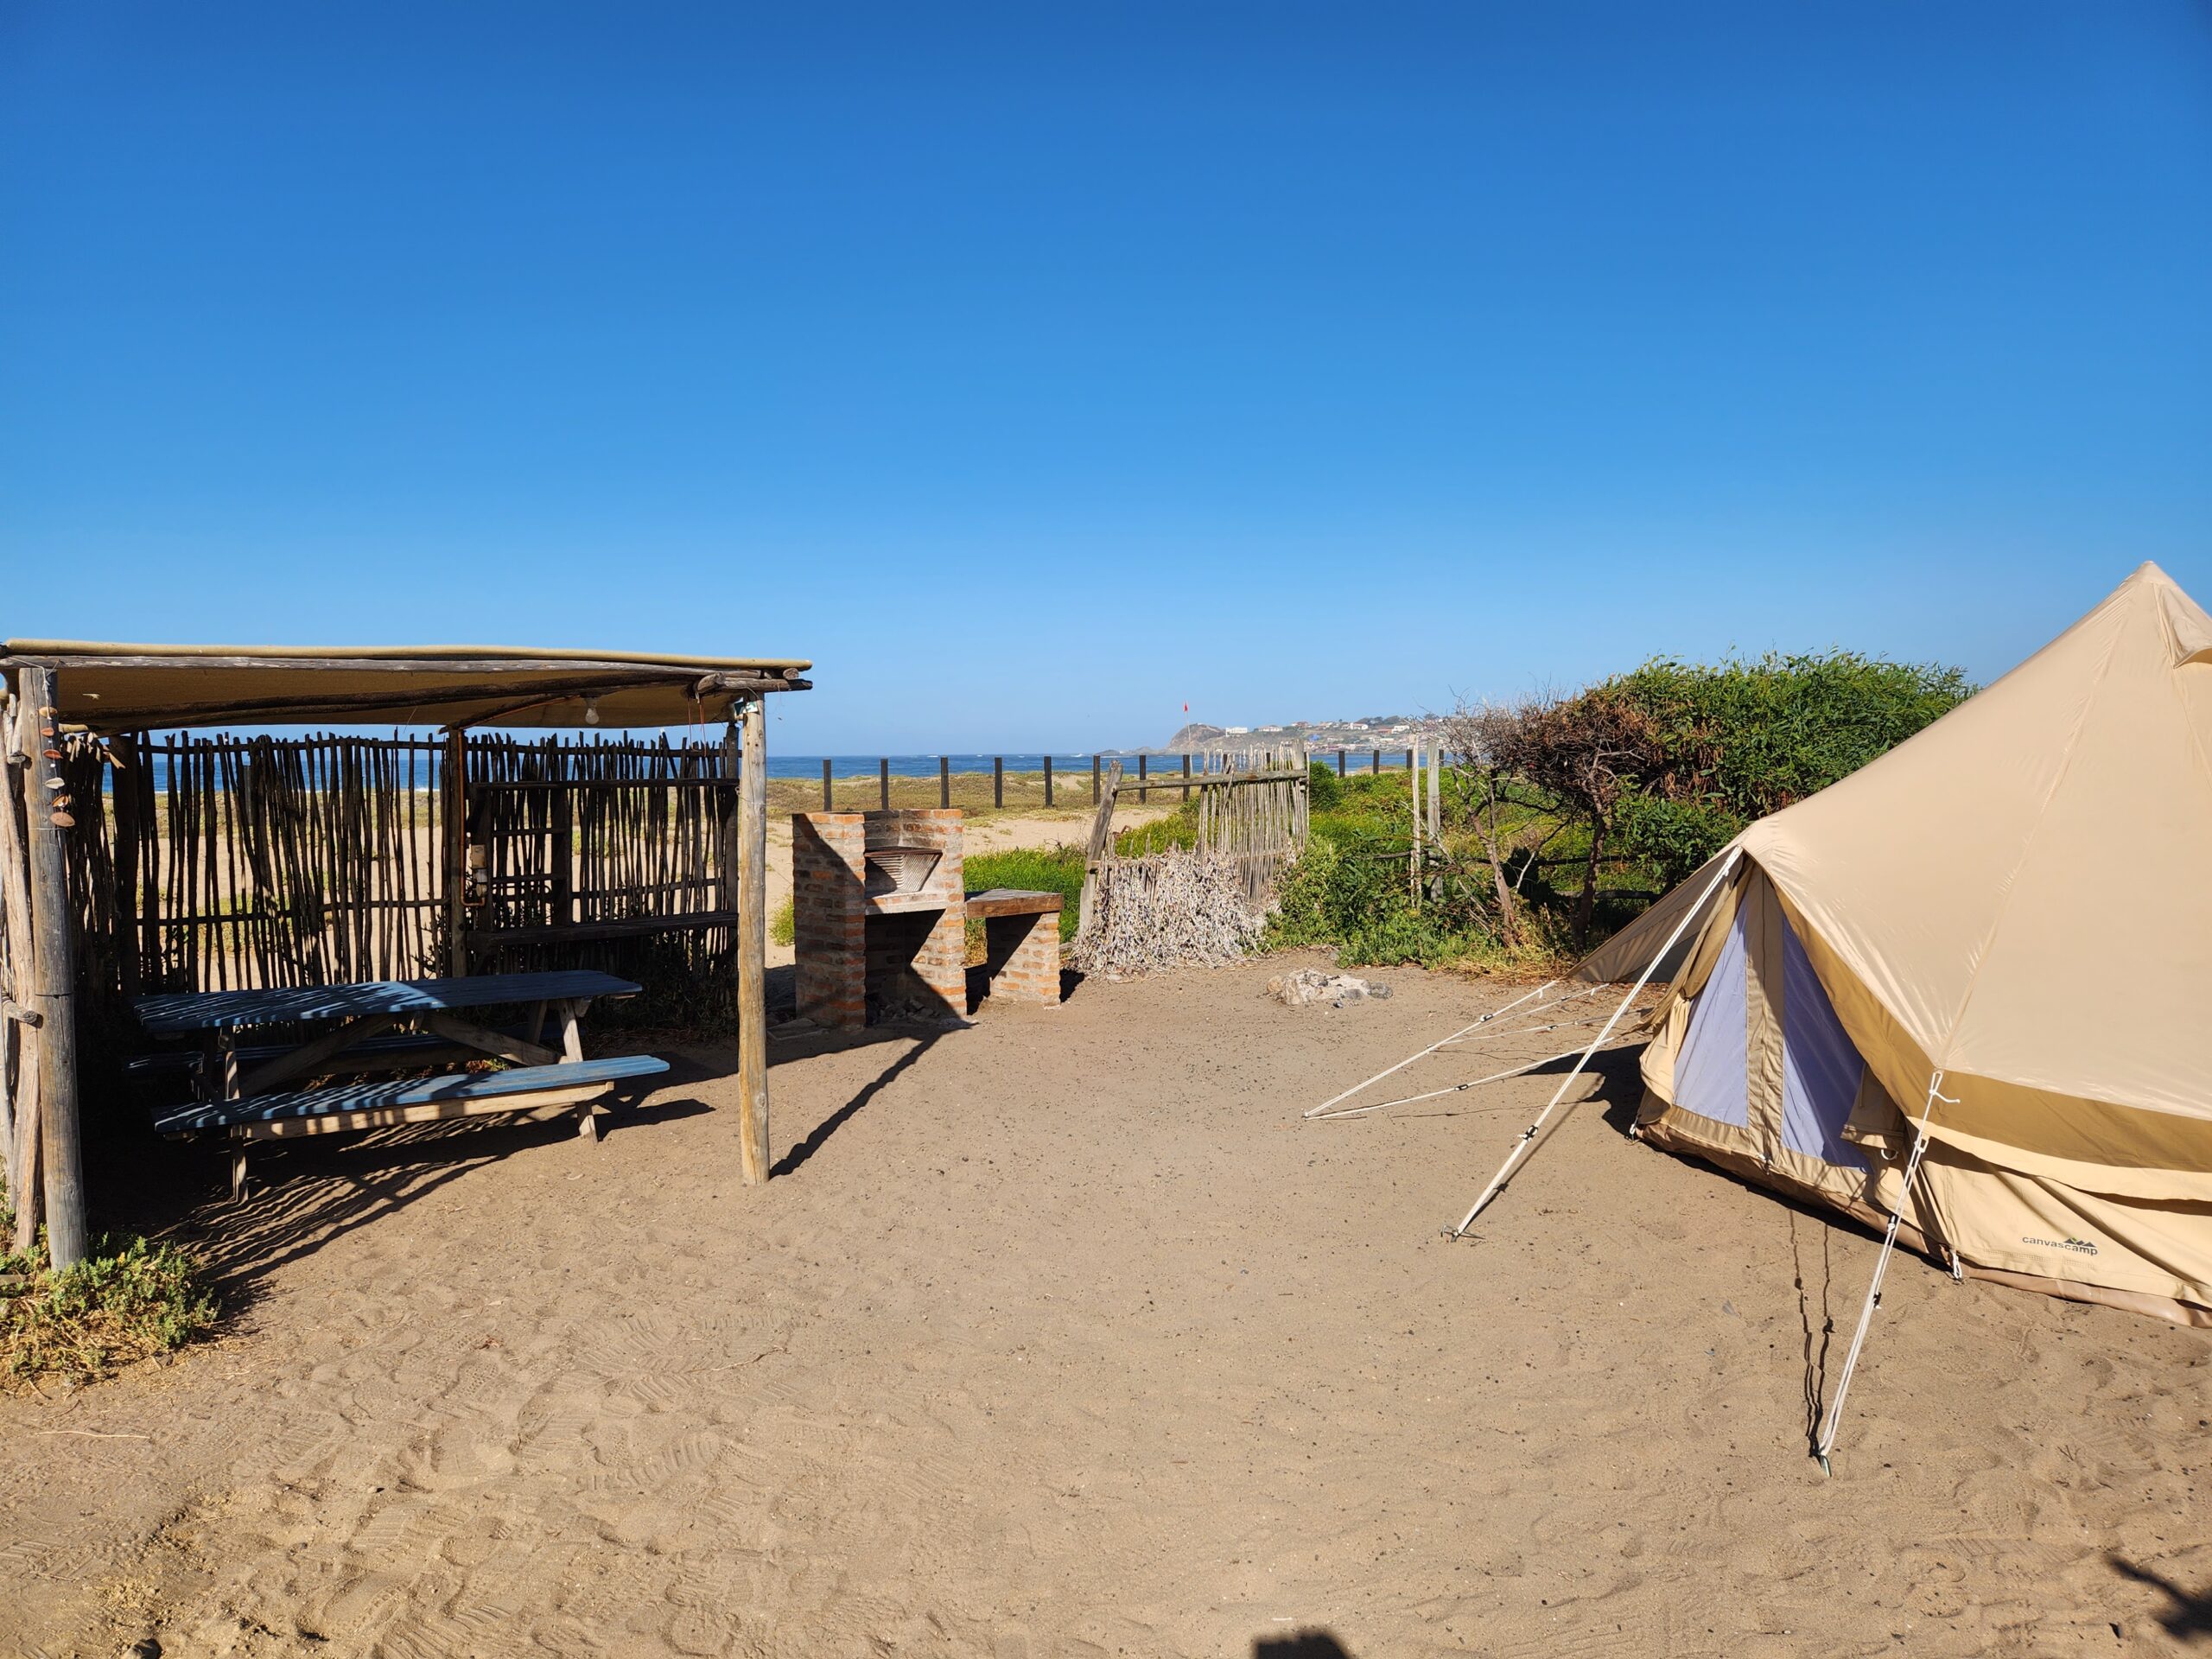 Los Molles - Camping Chivato - 1 cama de 2 plazas, 2 camas de 1.5 plazas - Sitio LOICA 42